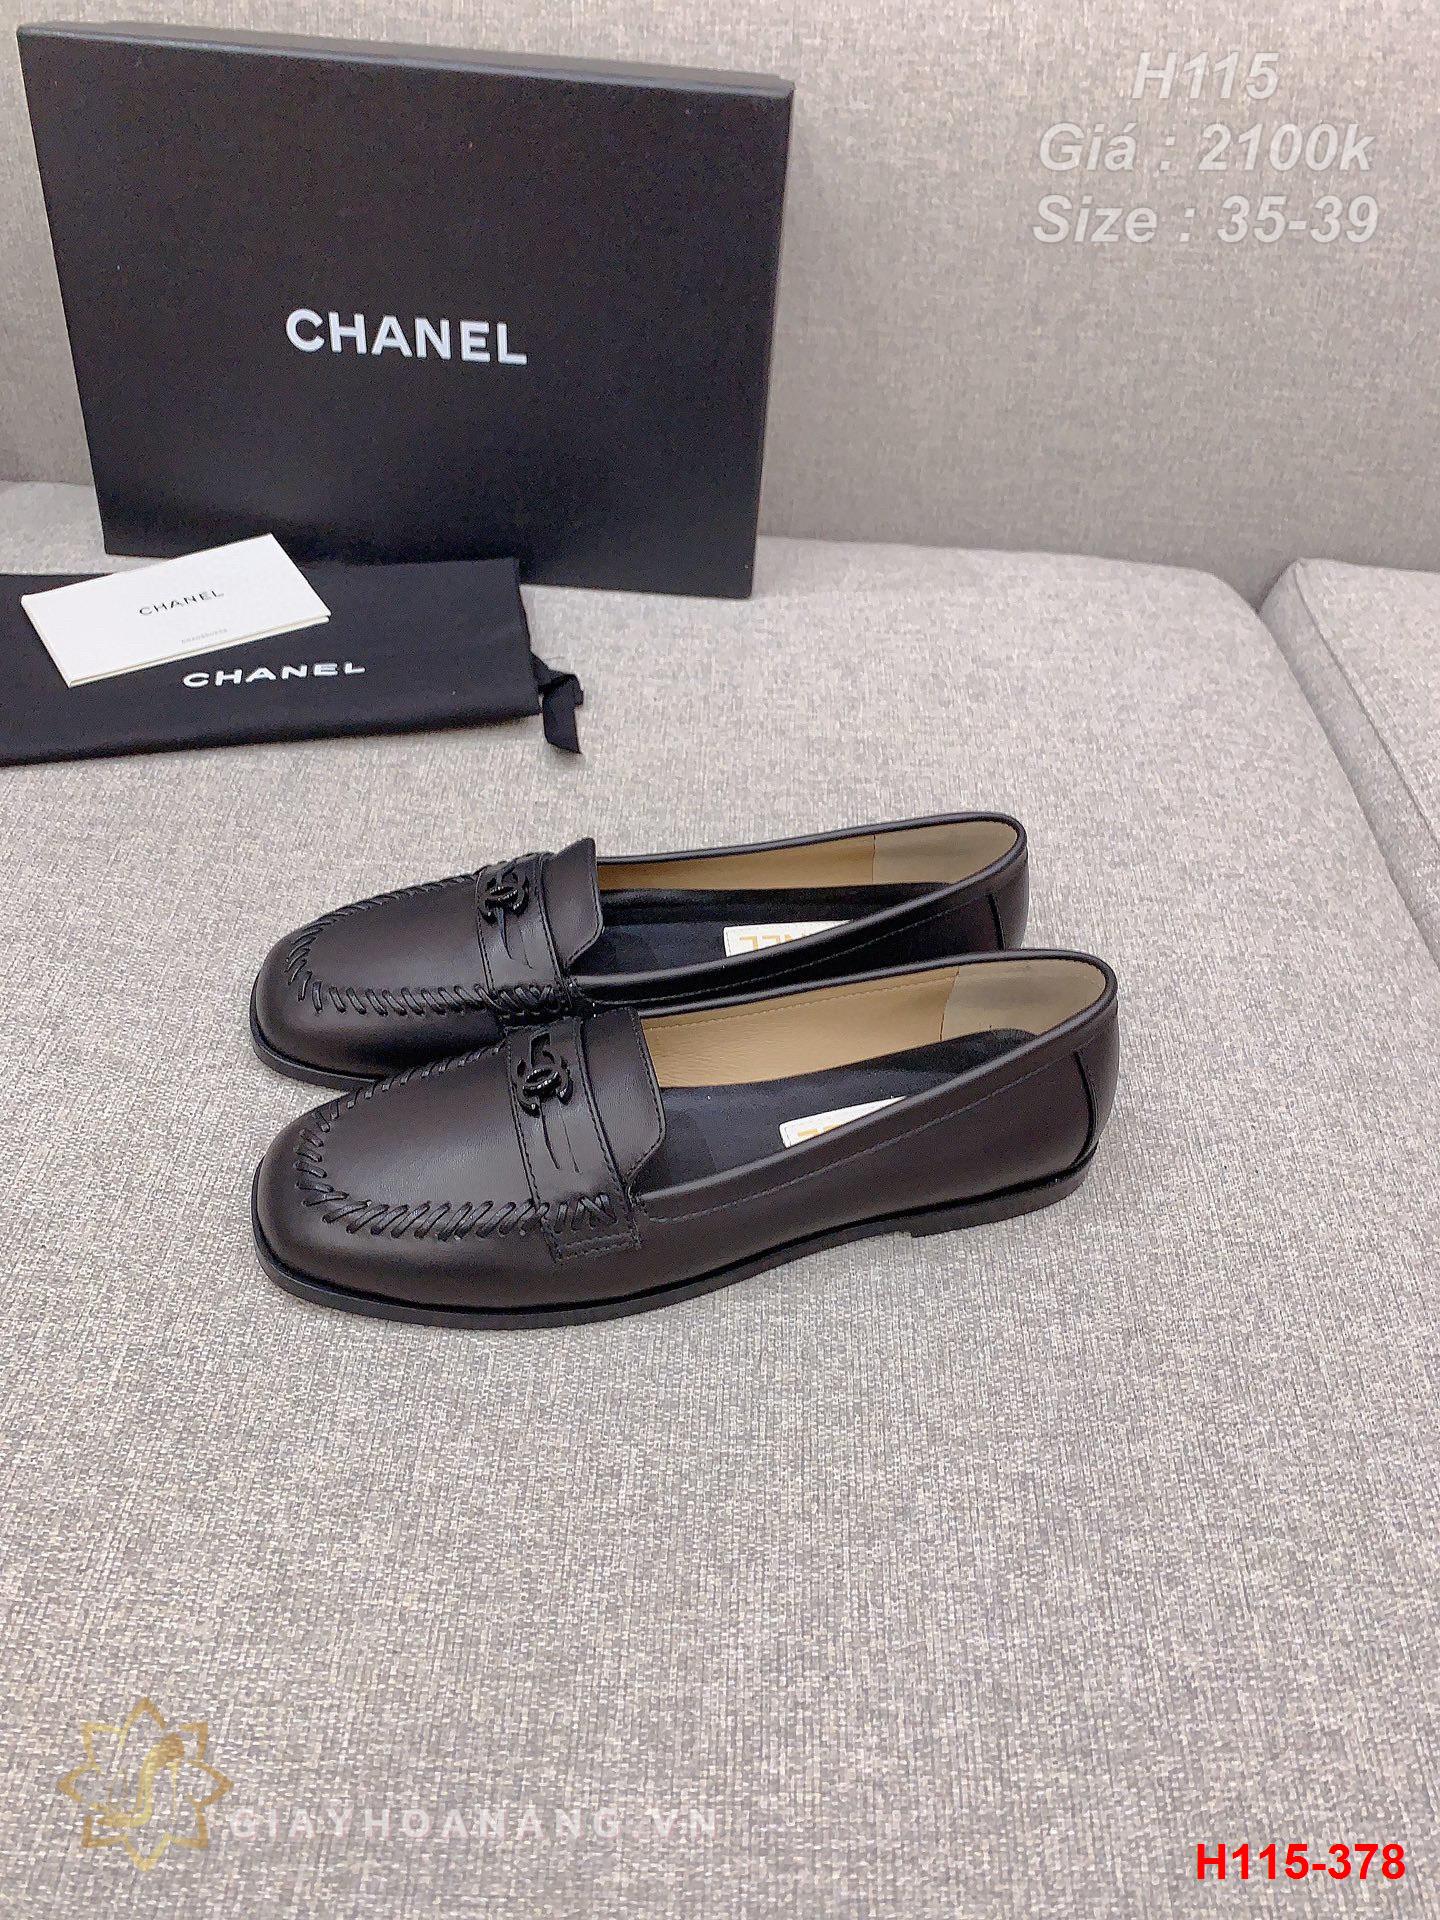 H115-378 Chanel giày lười siêu cấp